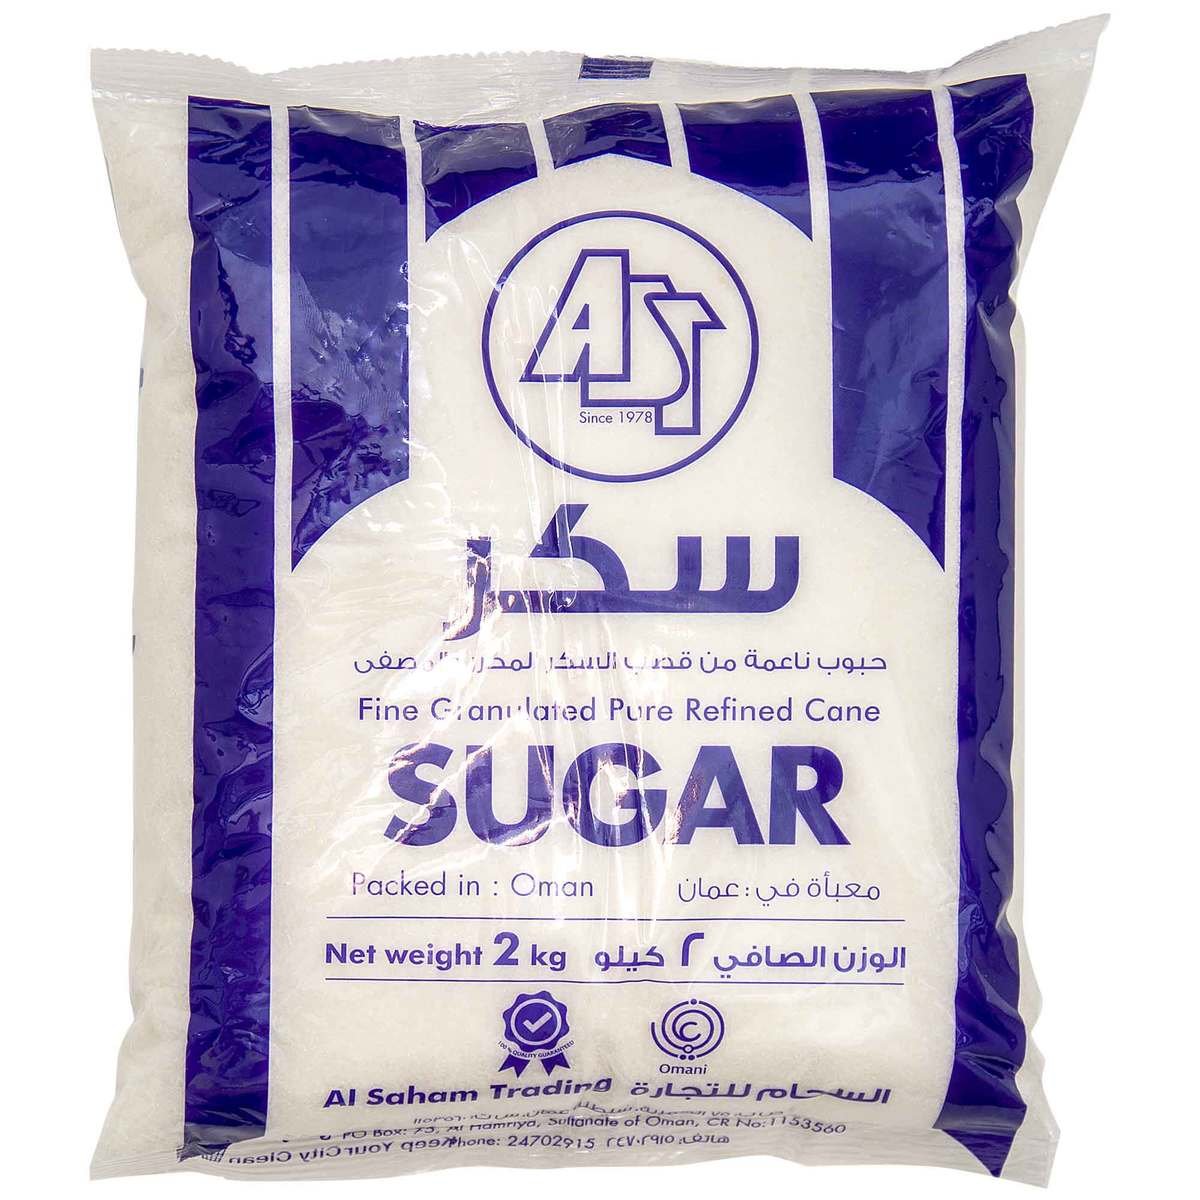 AST Sugar 2kg